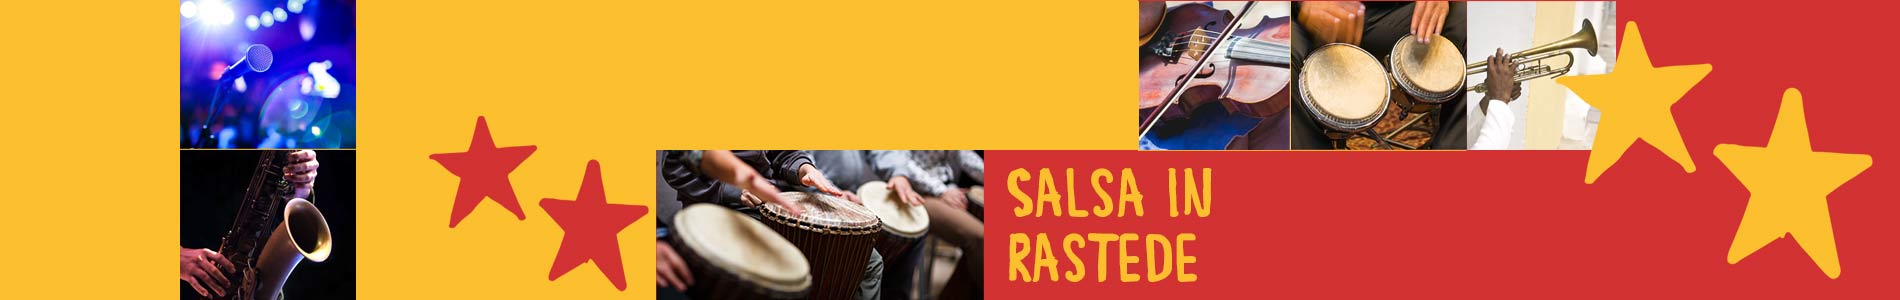 Salsa in Rastede – Salsa lernen und tanzen, Tanzkurse, Partys, Veranstaltungen